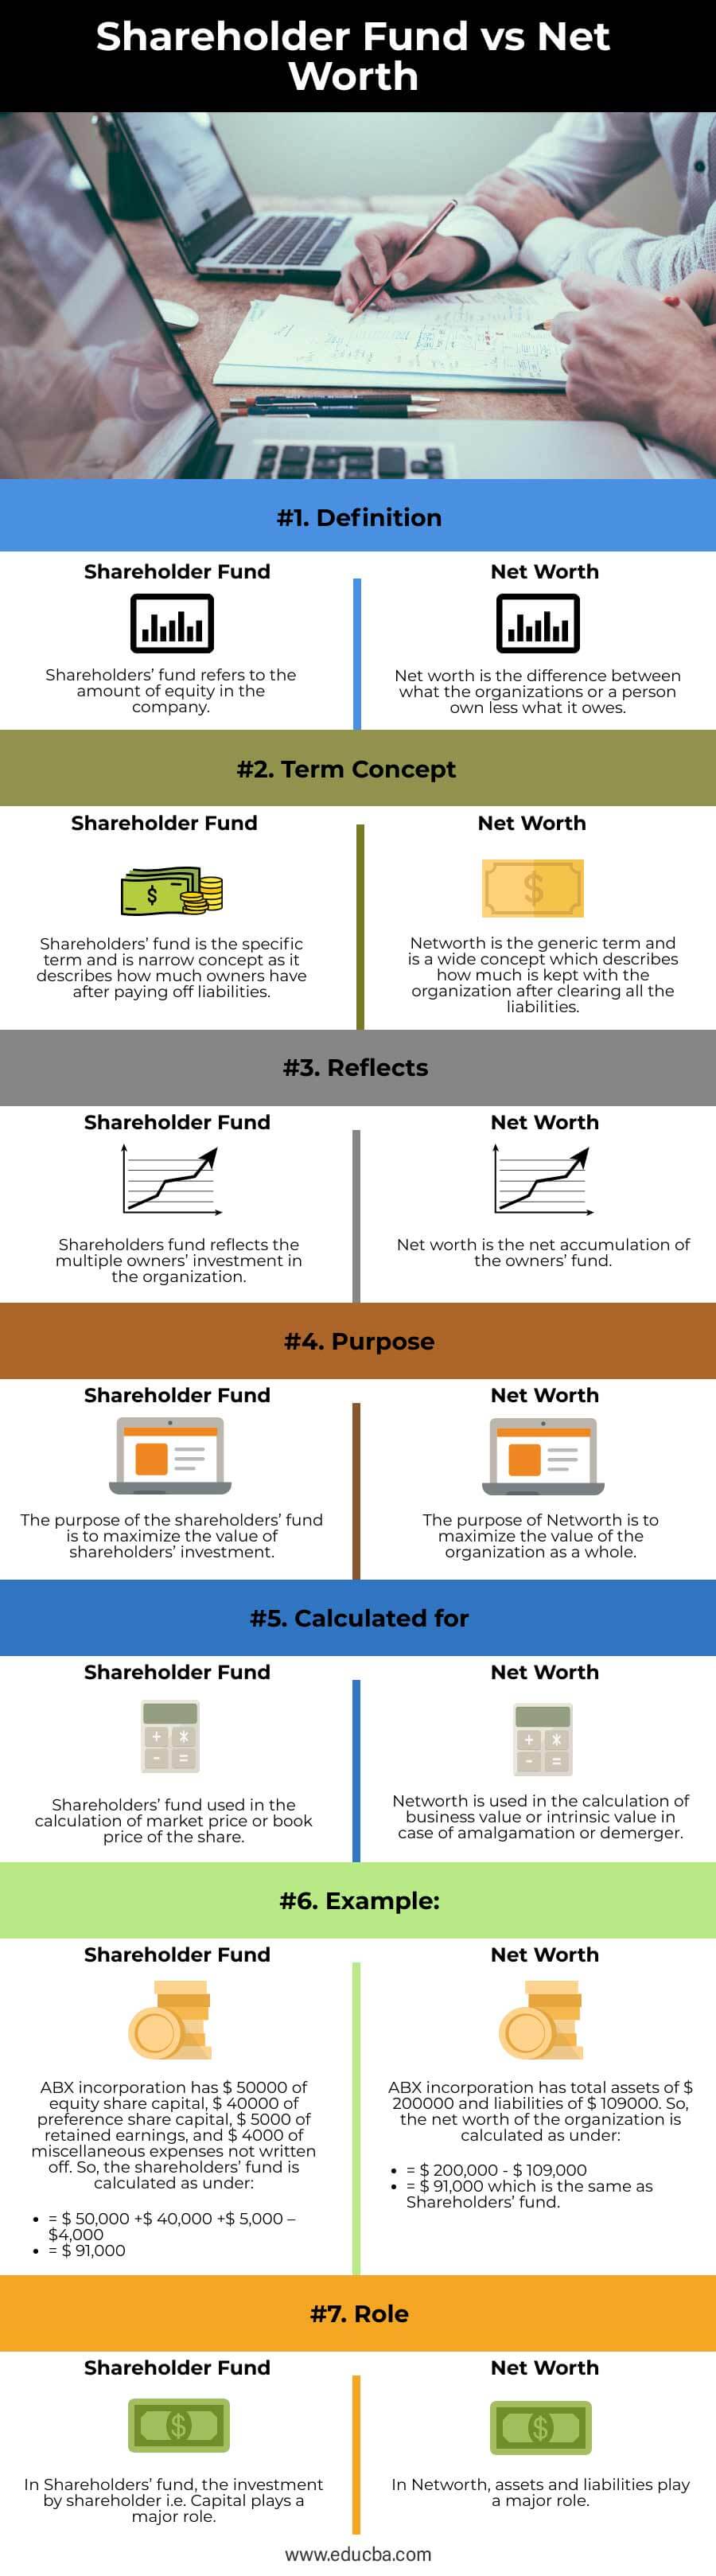 Shareholder-Fund-vs-Net-Worth-info